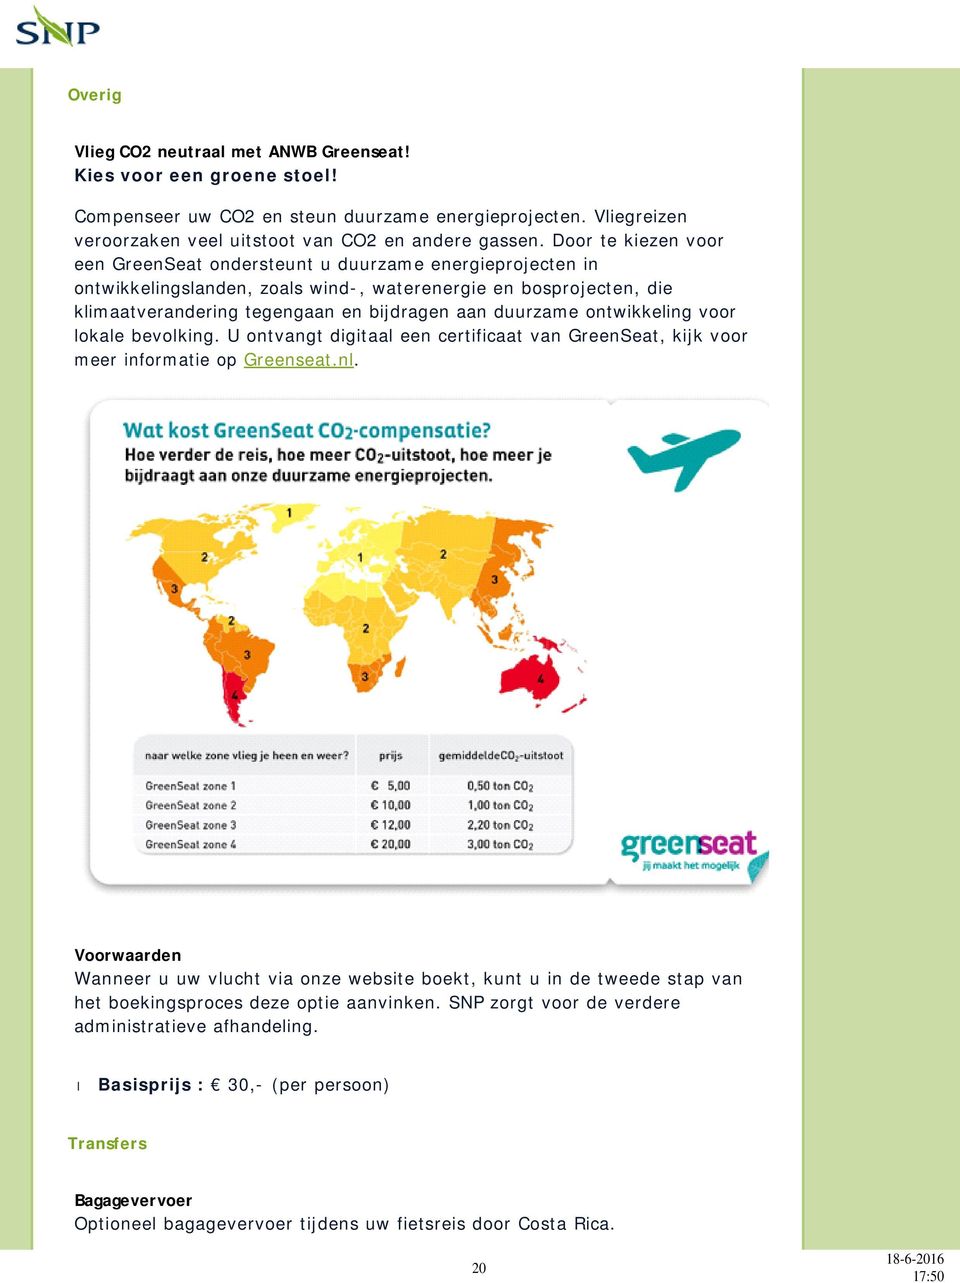 ontwikkeling voor lokale bevolking. U ontvangt digitaal een certificaat van GreenSeat, kijk voor meer informatie op Greenseat.nl.